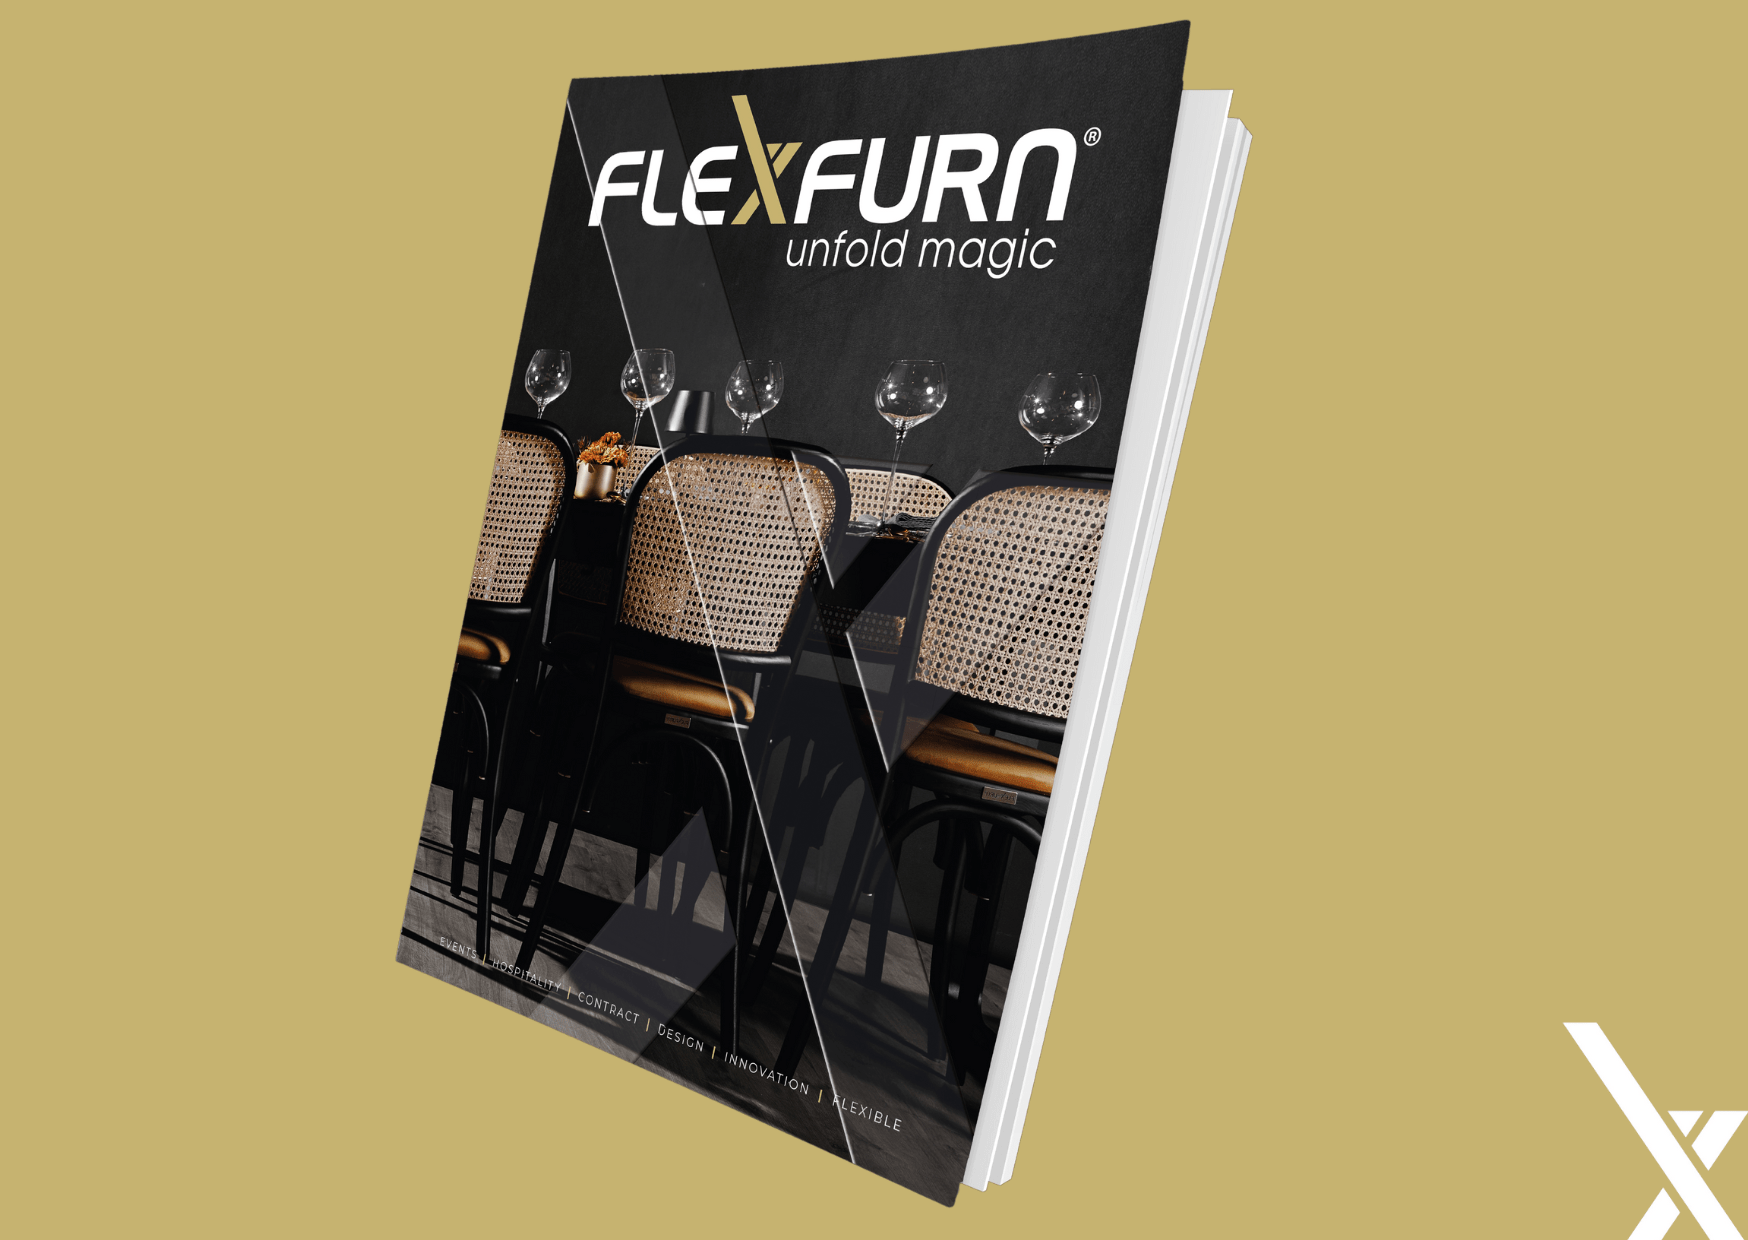 Une bouffée d'air frais : découvrez le nouveau style de Flexfurn !